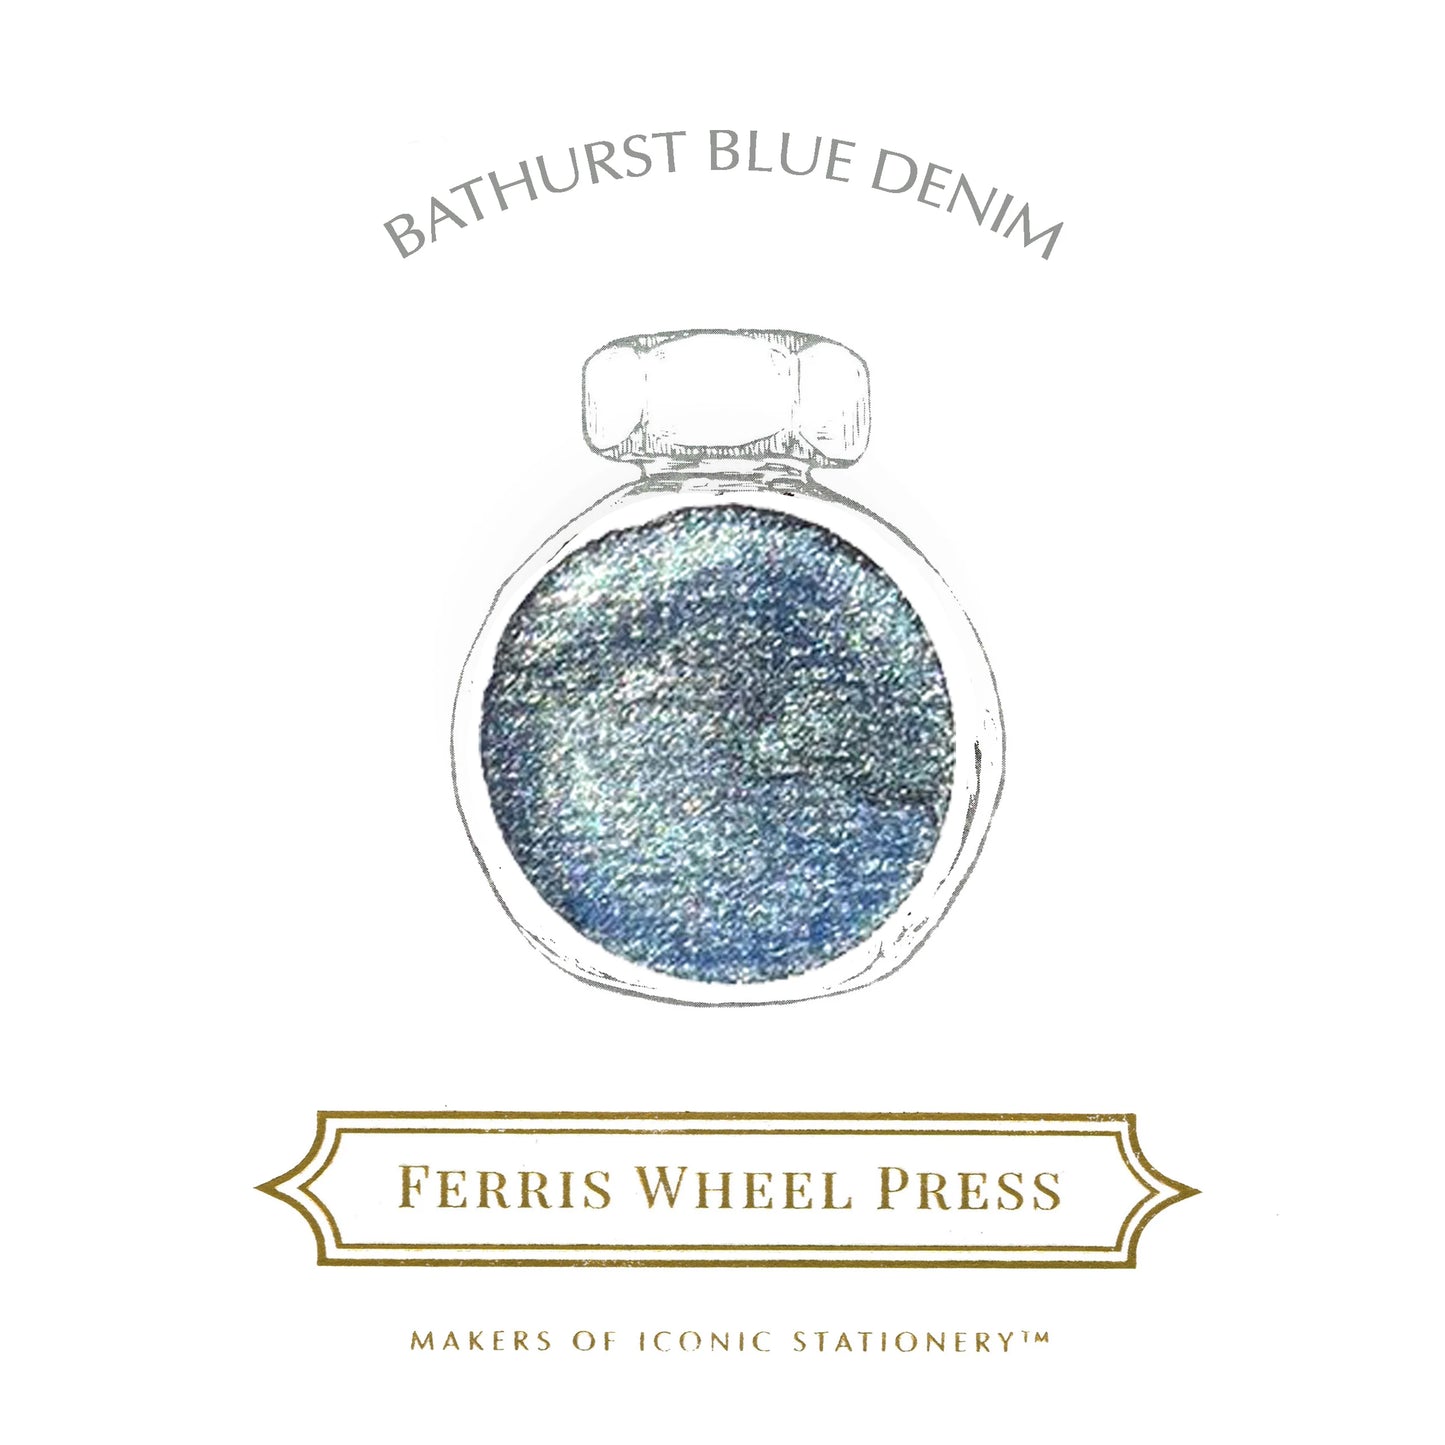 Ferris Wheel Press - Bathurst Blue Denim Ink 38 ml - Shimmer